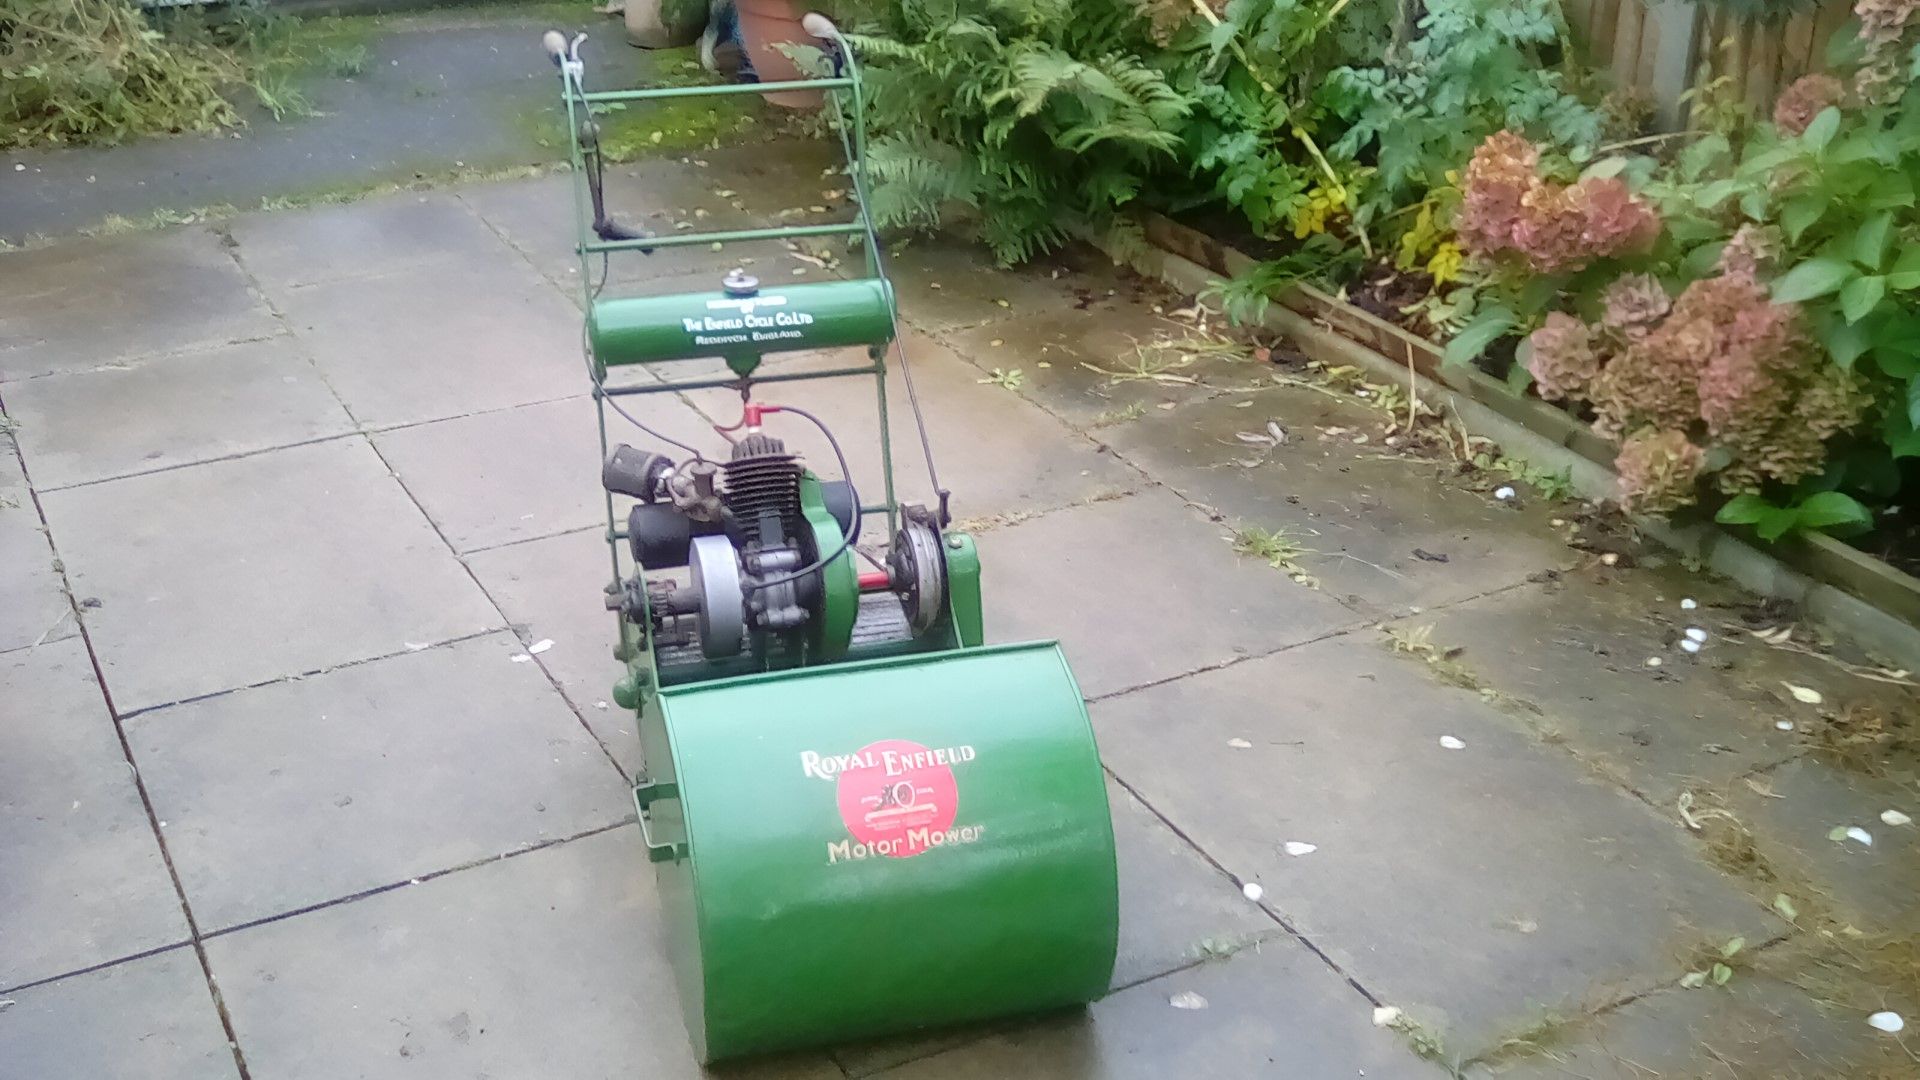 Royal Enfield Lawn Mower